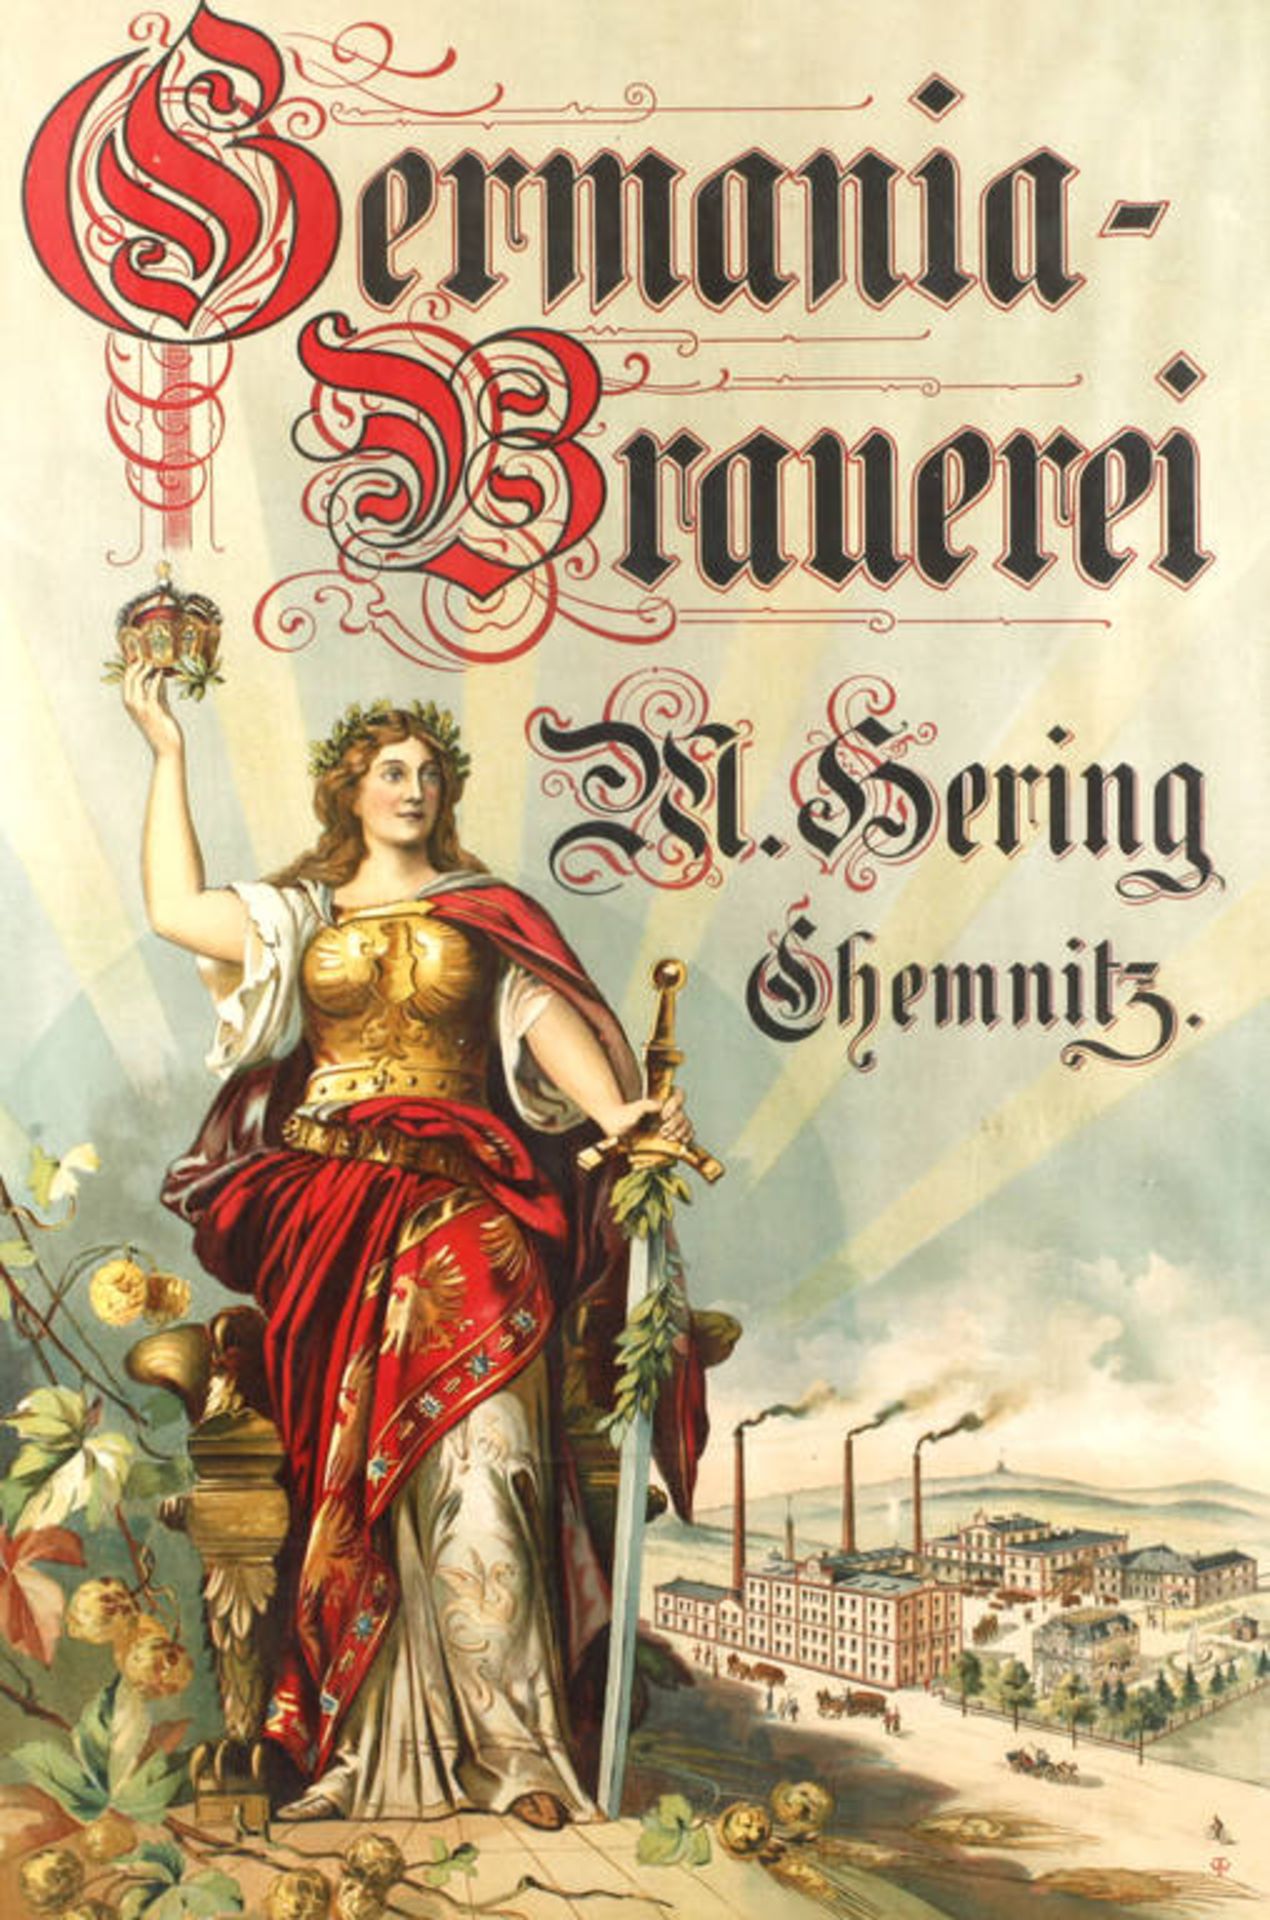 Brauereiplakat Chemnitz
Germania Brauerei, Hering Chemnitz, um 1900, große Chromolithographie mit